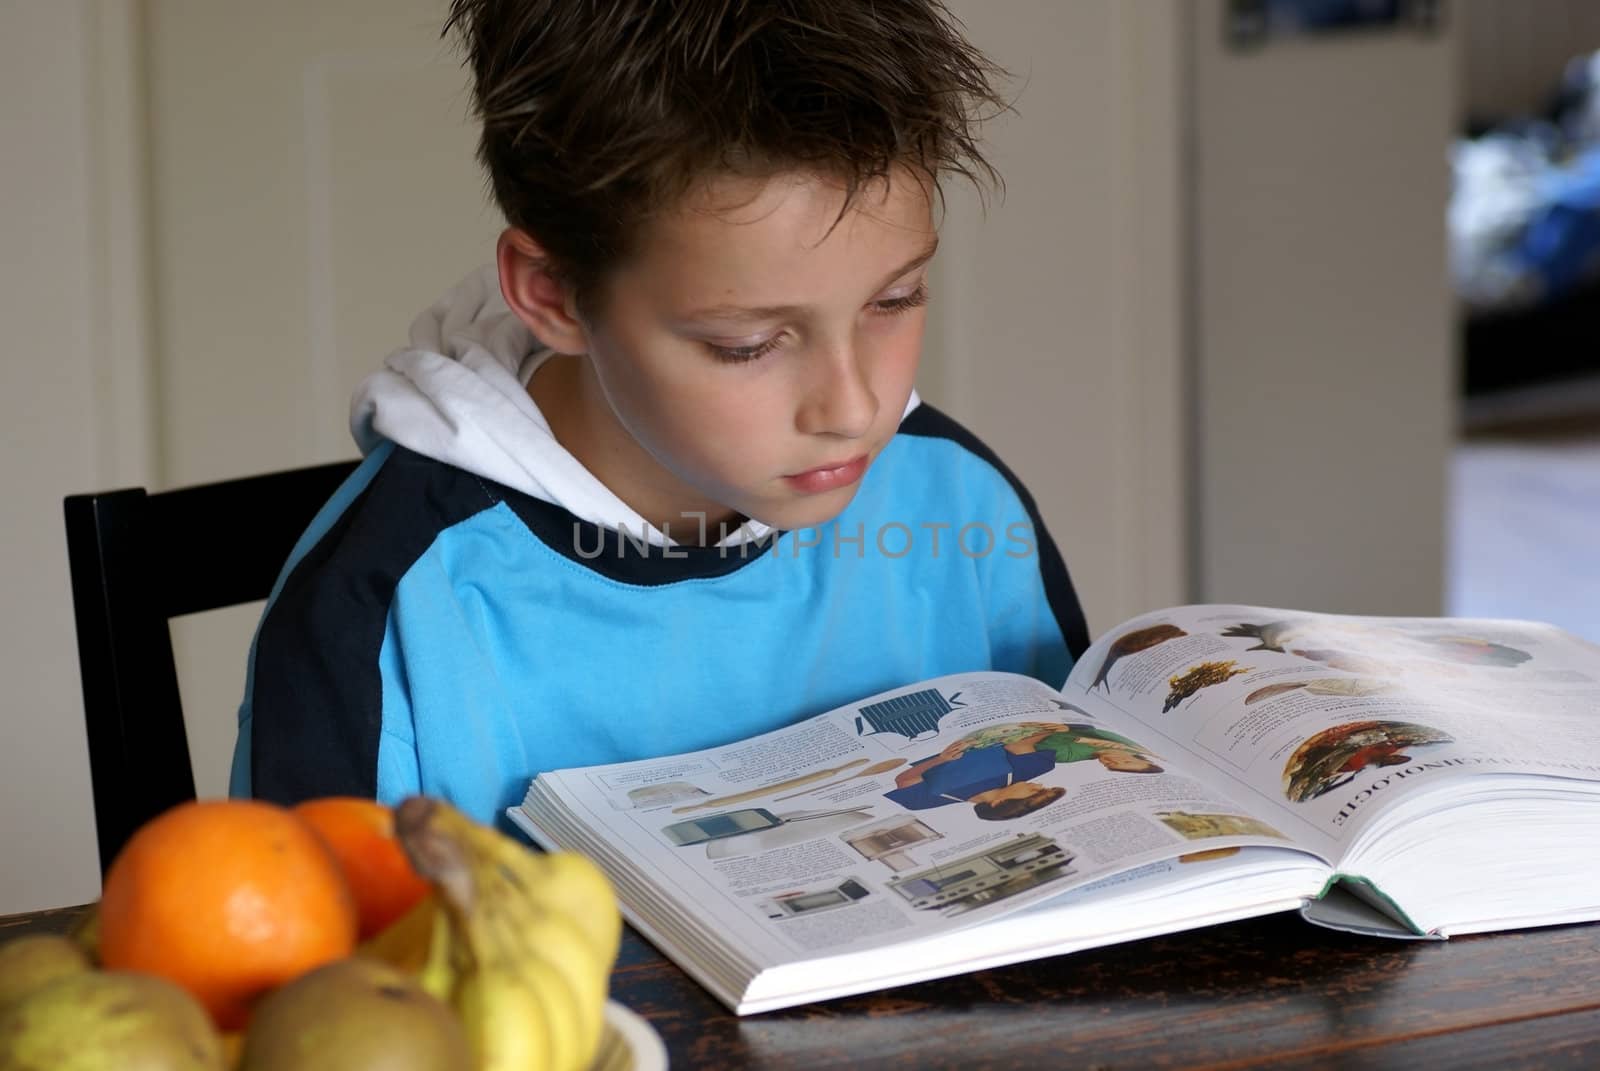 Young boy reading an encyclopedia.